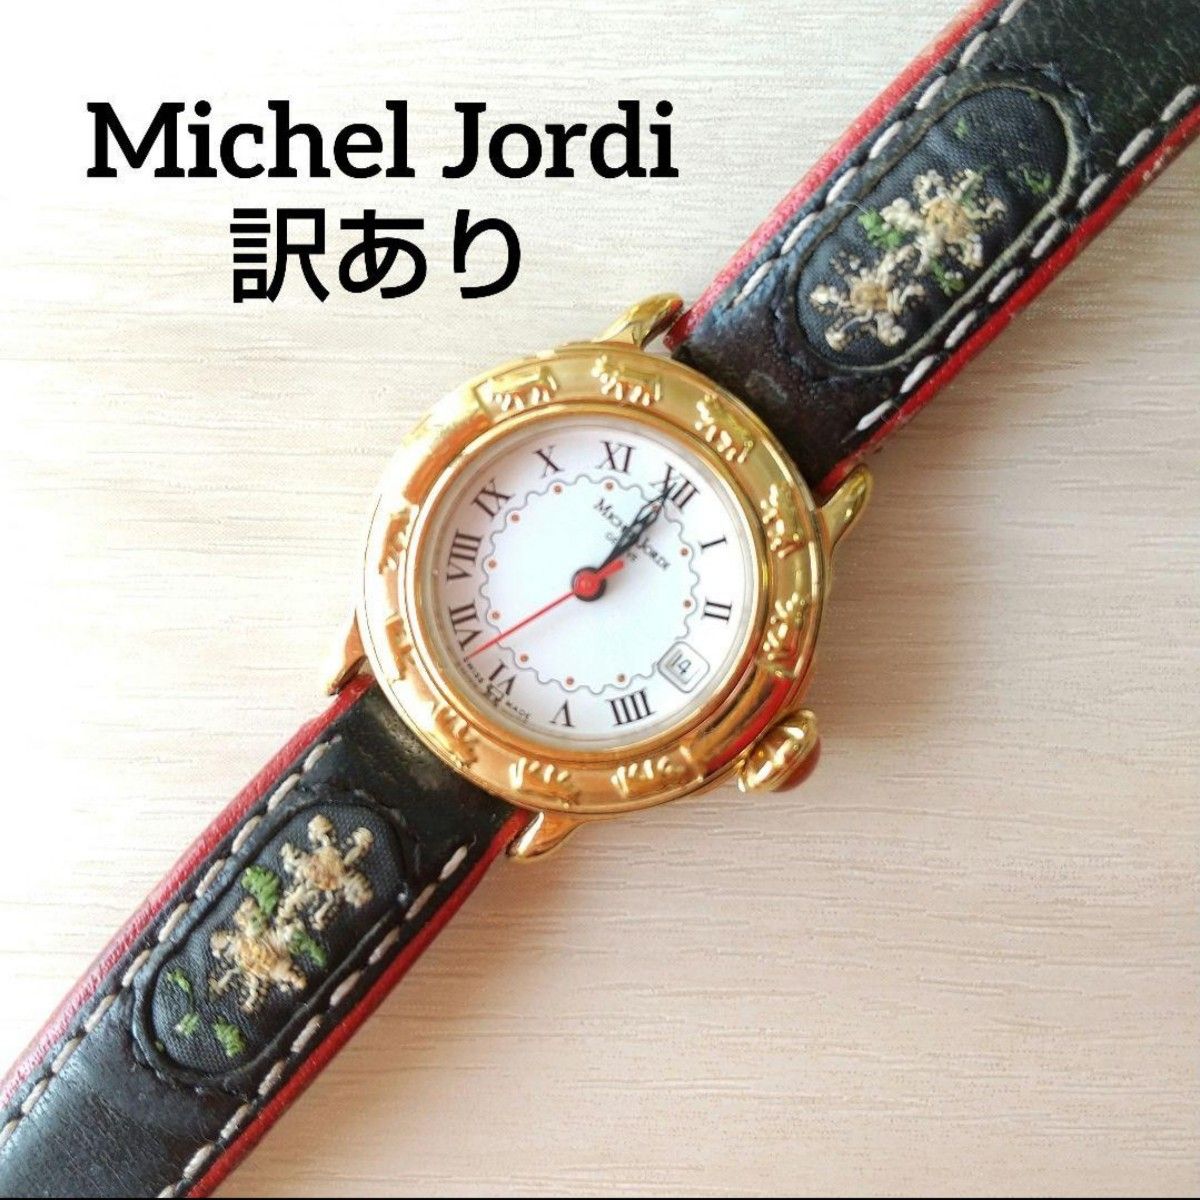 【ジャンク品】ミシェルジョルディ michel jordi 腕時計 スイス製